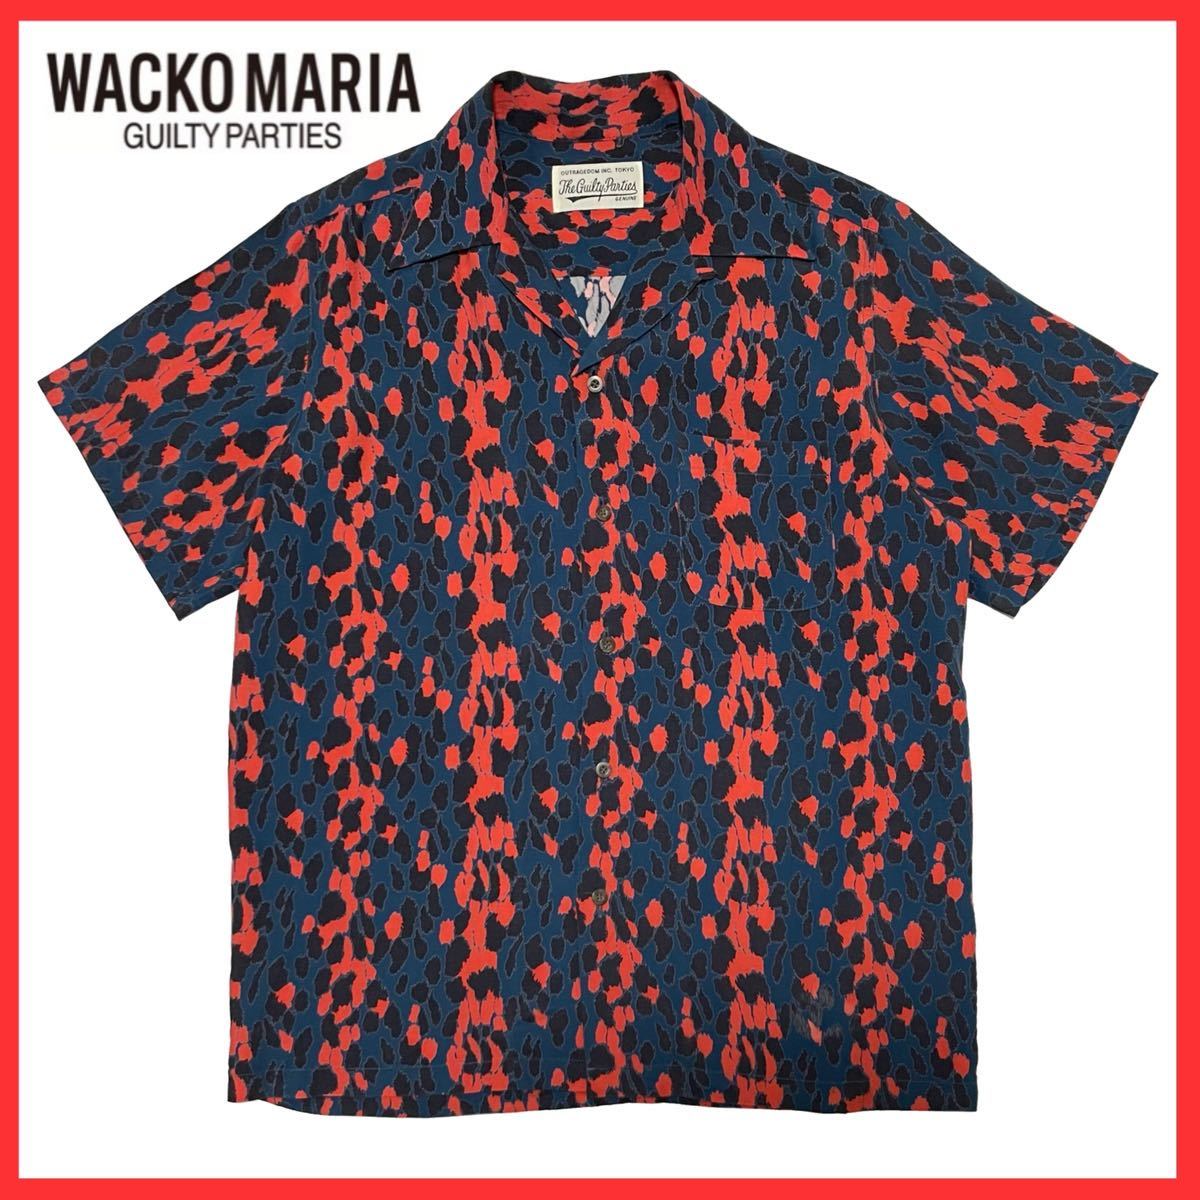 WACKO MARIAアロハシャツ ブラジル サイズS レーヨン キムタク-